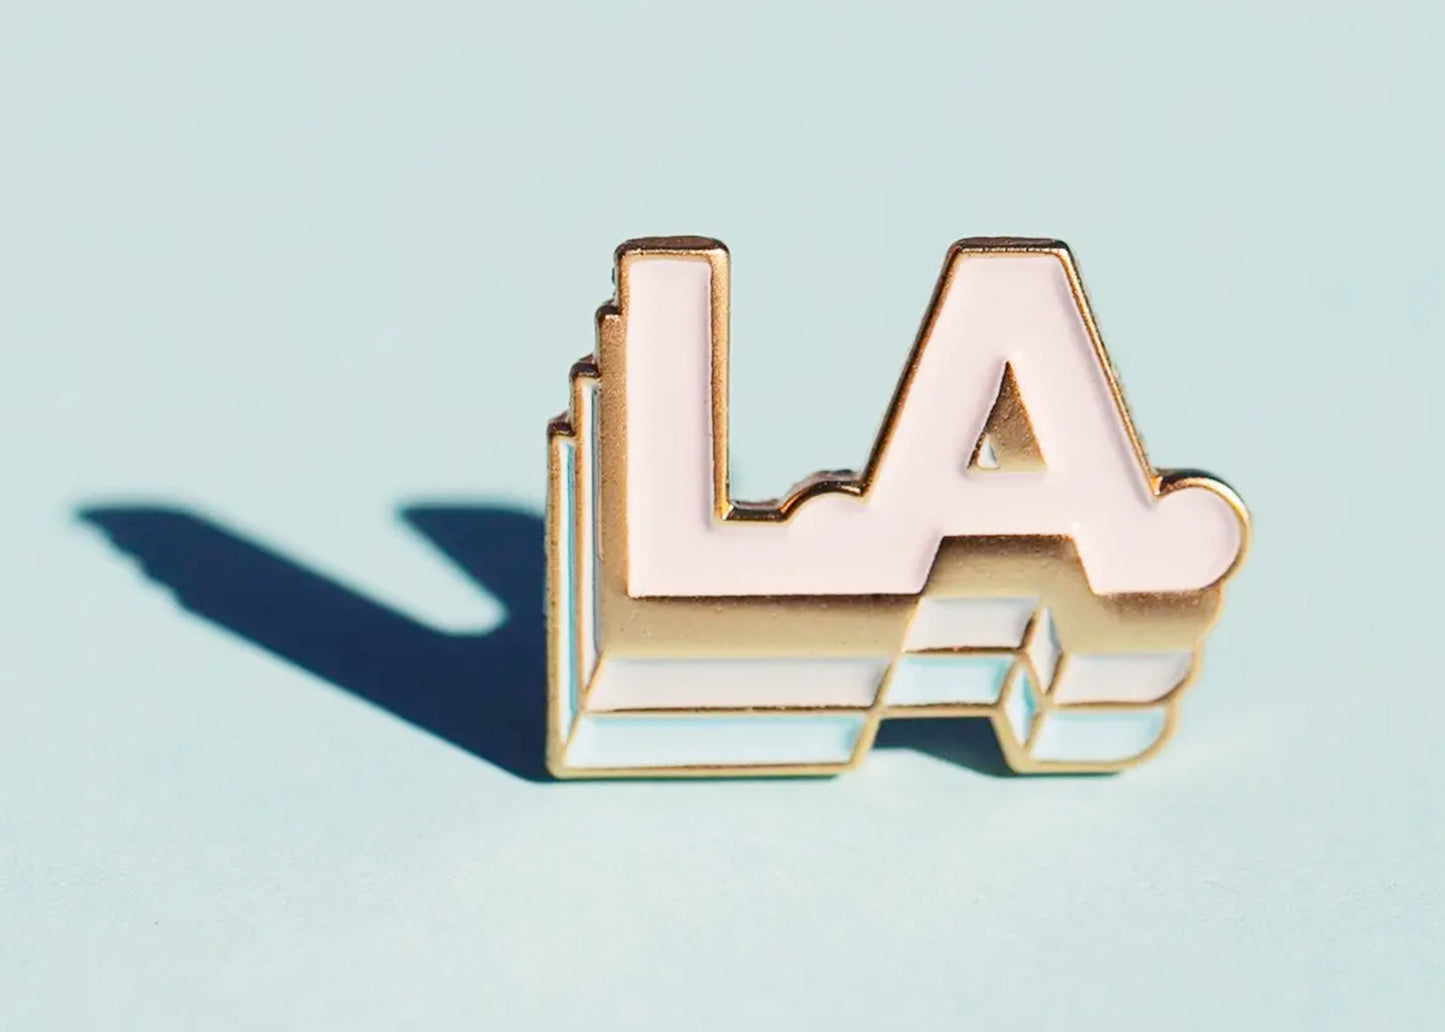 Los Angeles Enamel Pin in Matte Gold